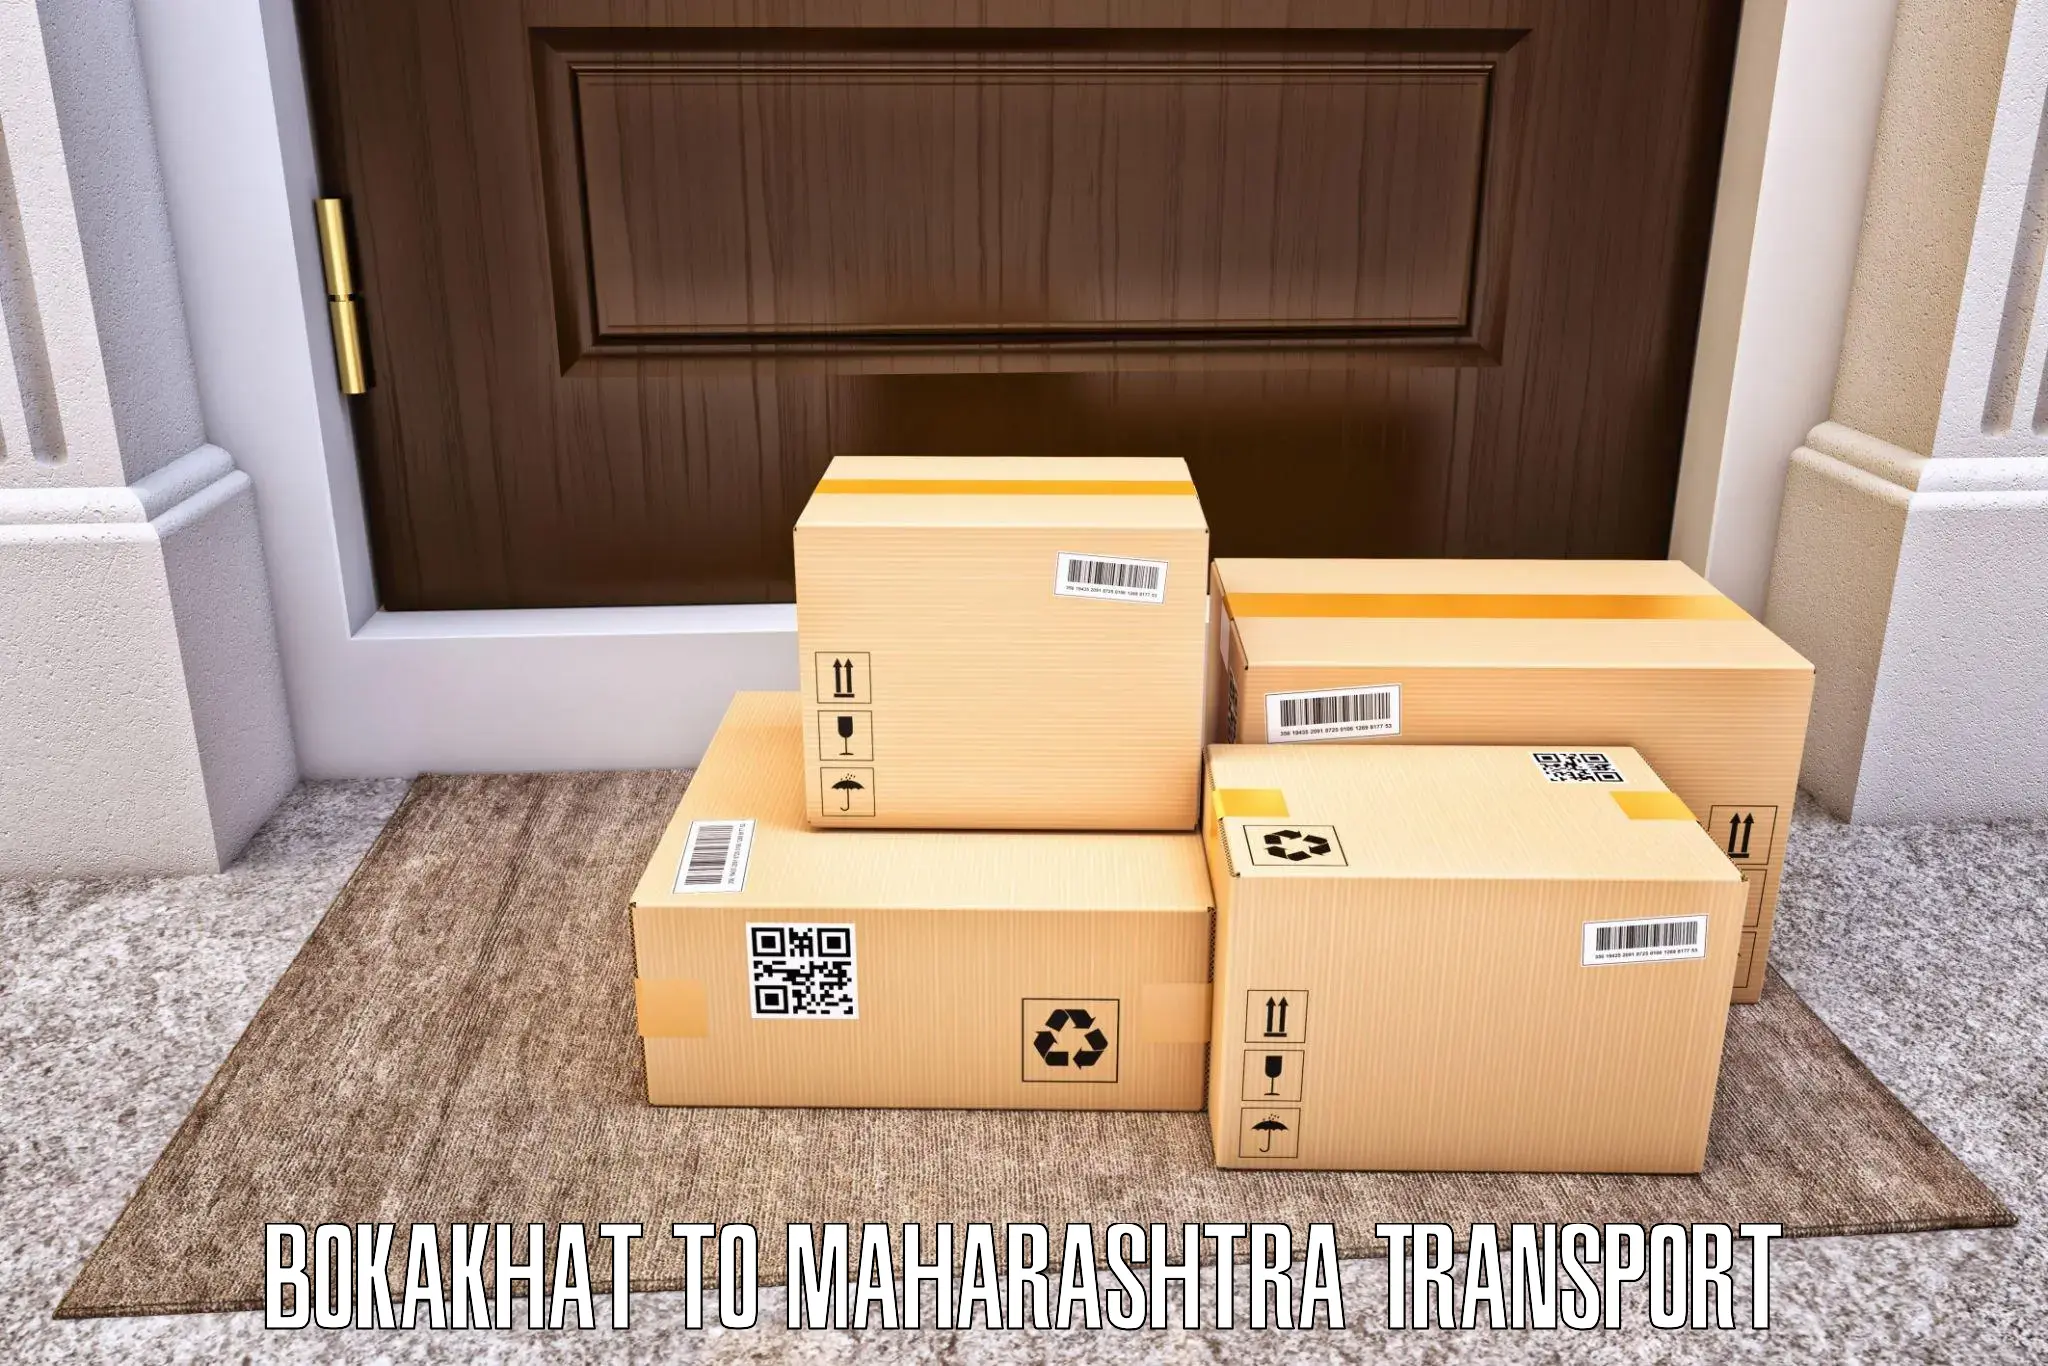 Luggage transport services Bokakhat to Mahur